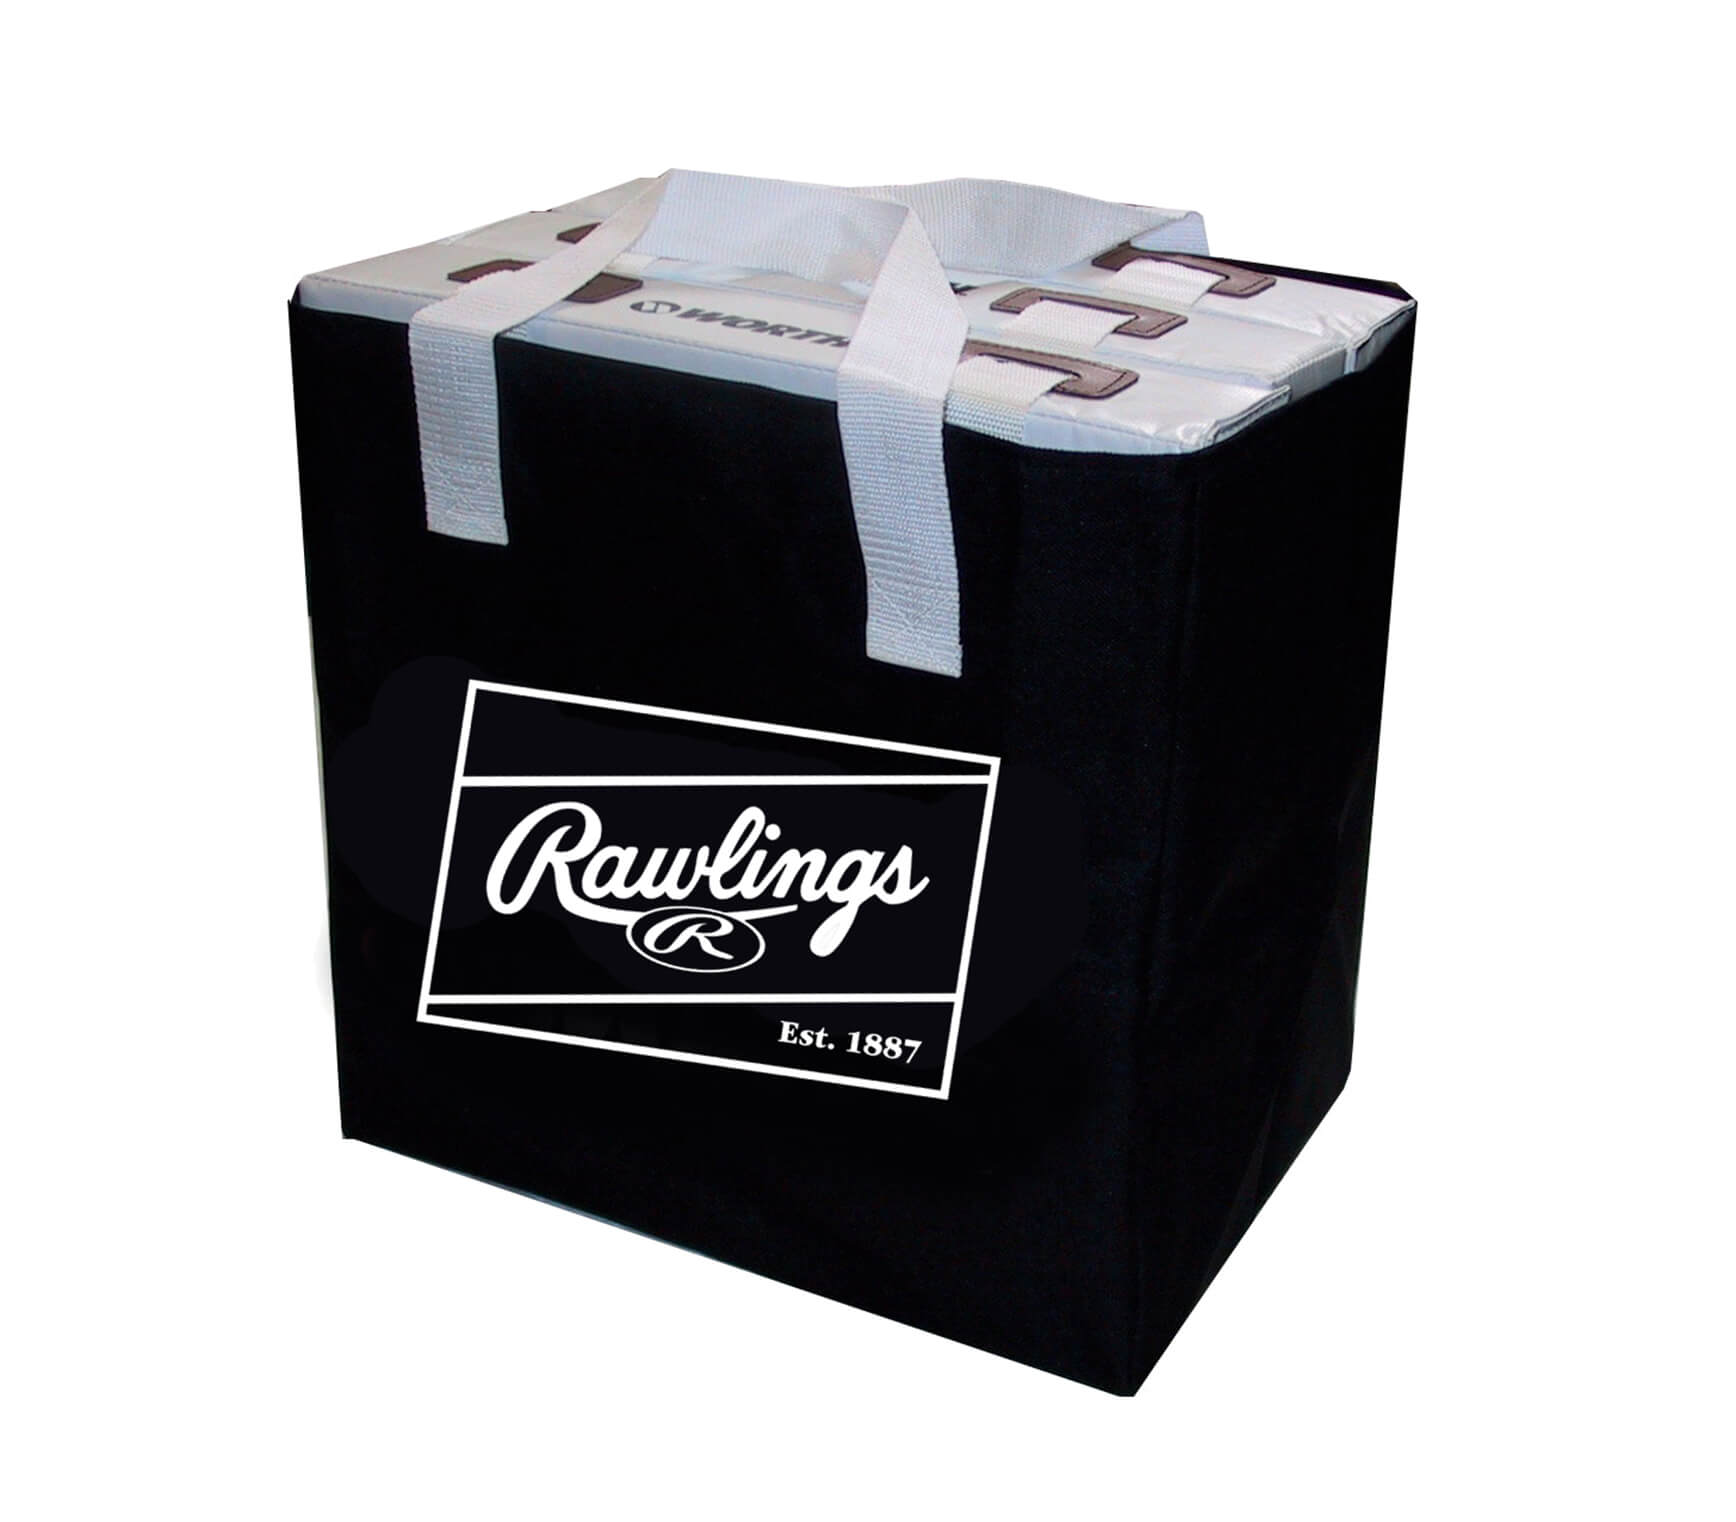 Rawlings Base Bag-Hold Set of 3 Bases